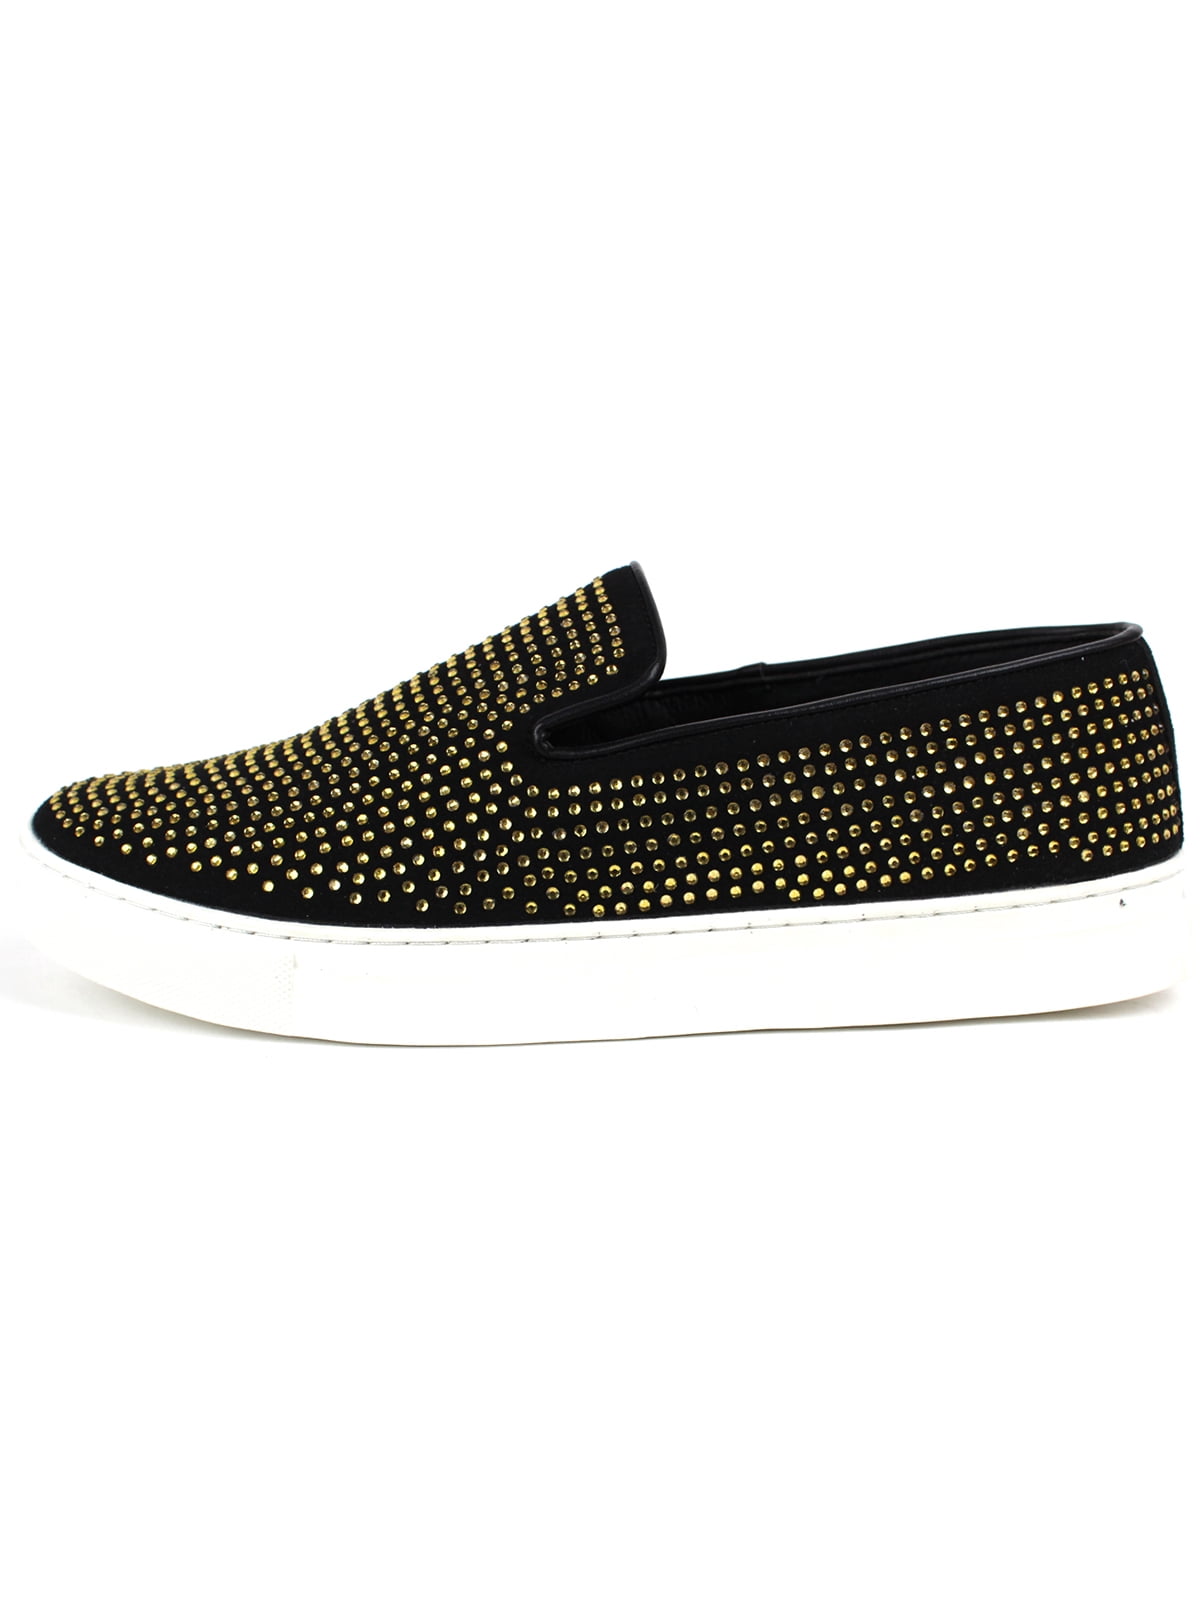 black and gold designer loafers